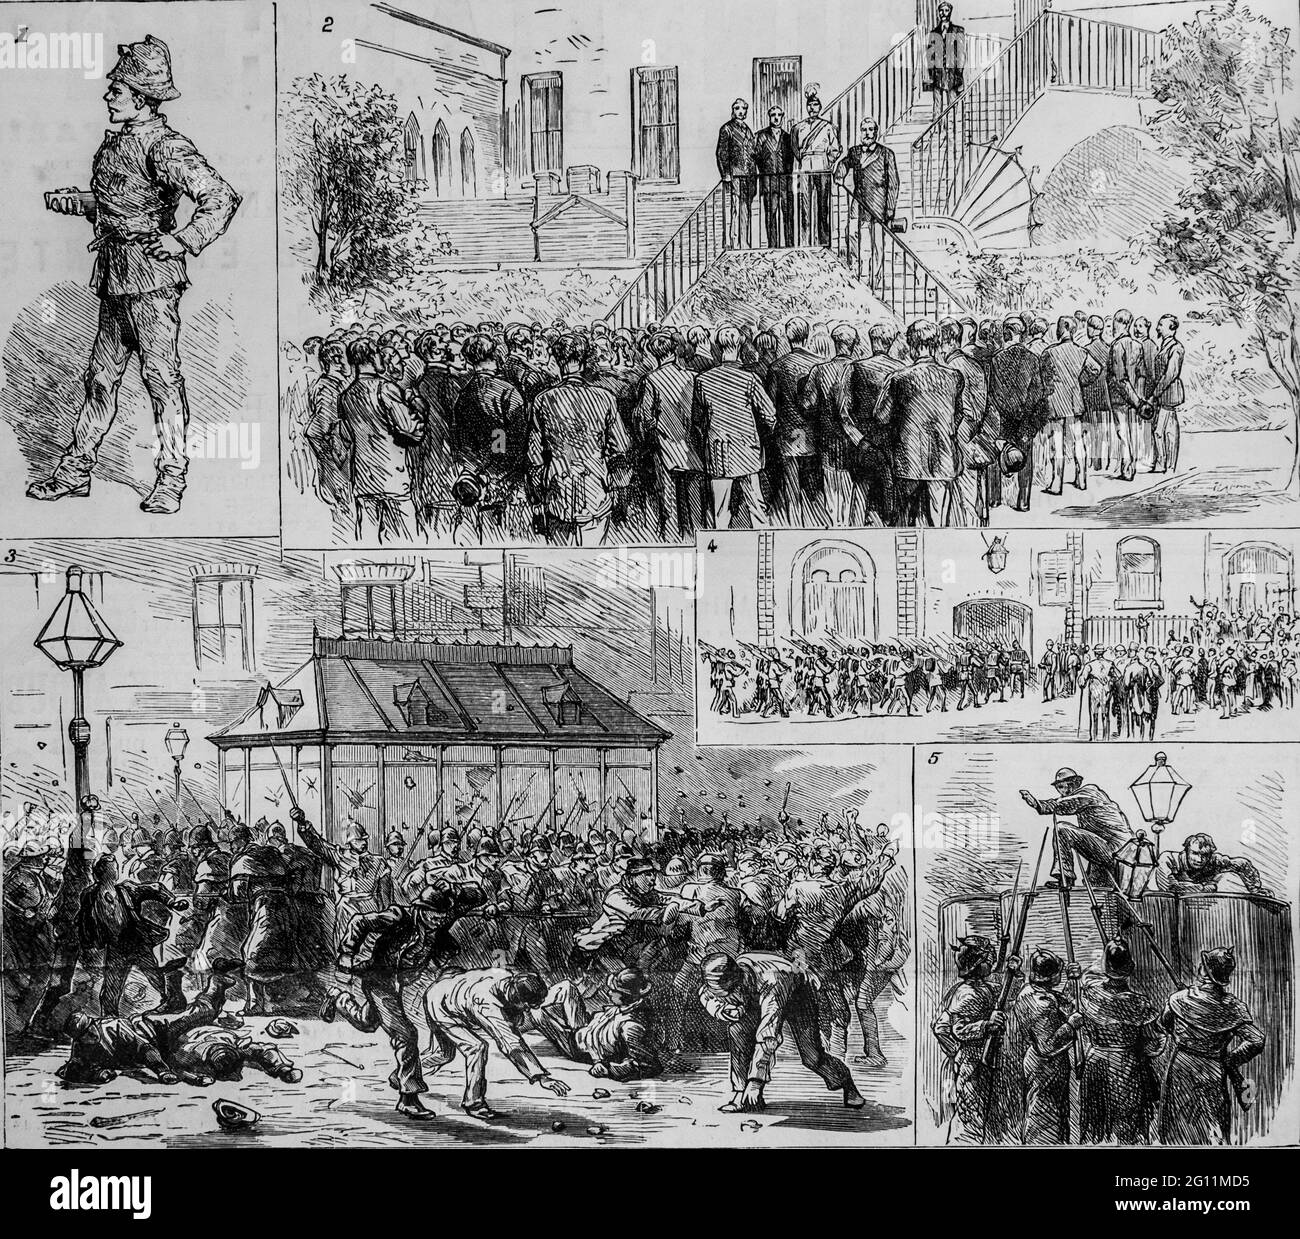 la greve de la police a dublino, l'univers illustre 1882, editeur librairie nouvelle Foto Stock